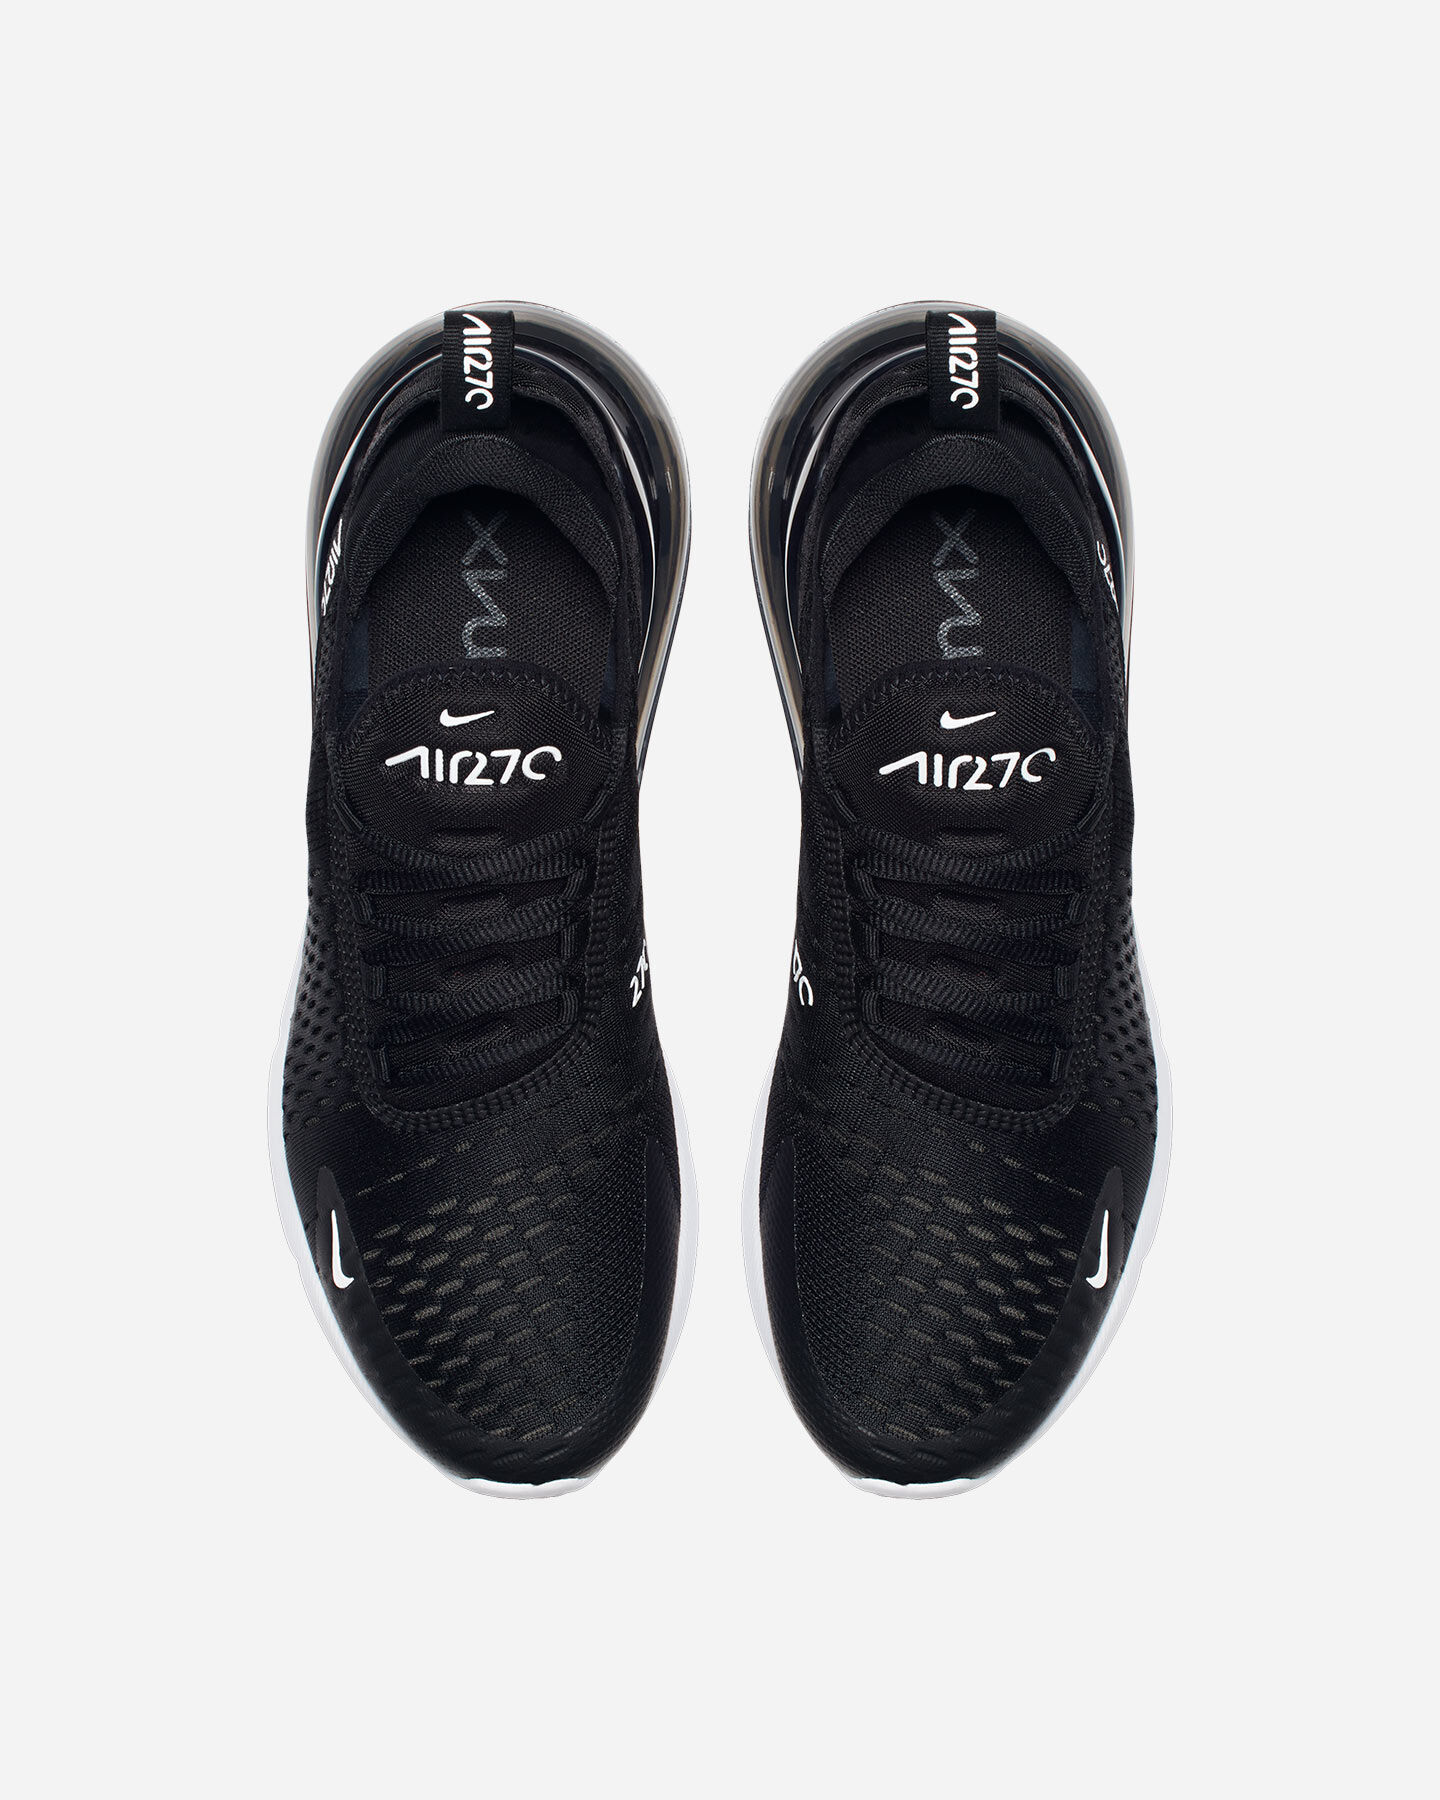  Scarpe sneakers NIKE AIR MAX 270 W S4058238|001|6.5 scatto 3